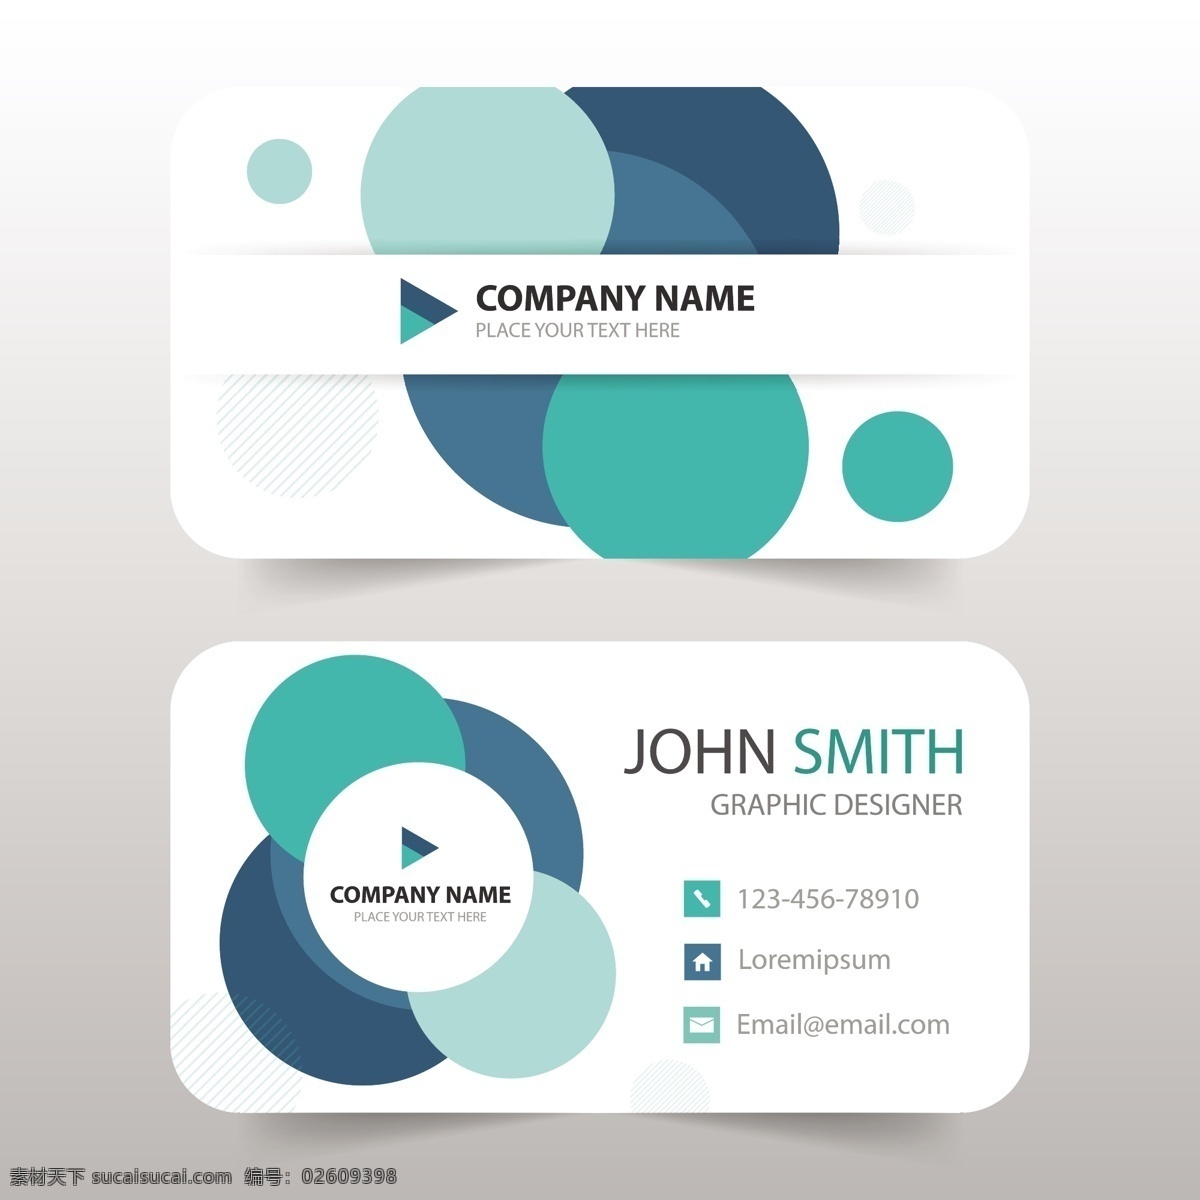 名片模板设计 标志 名片 商务 抽象 办公 模板 演示 企业 公司 抽象标志 现代 文具 企业身份 身份 颜色 身份证 企业标志 公司标志